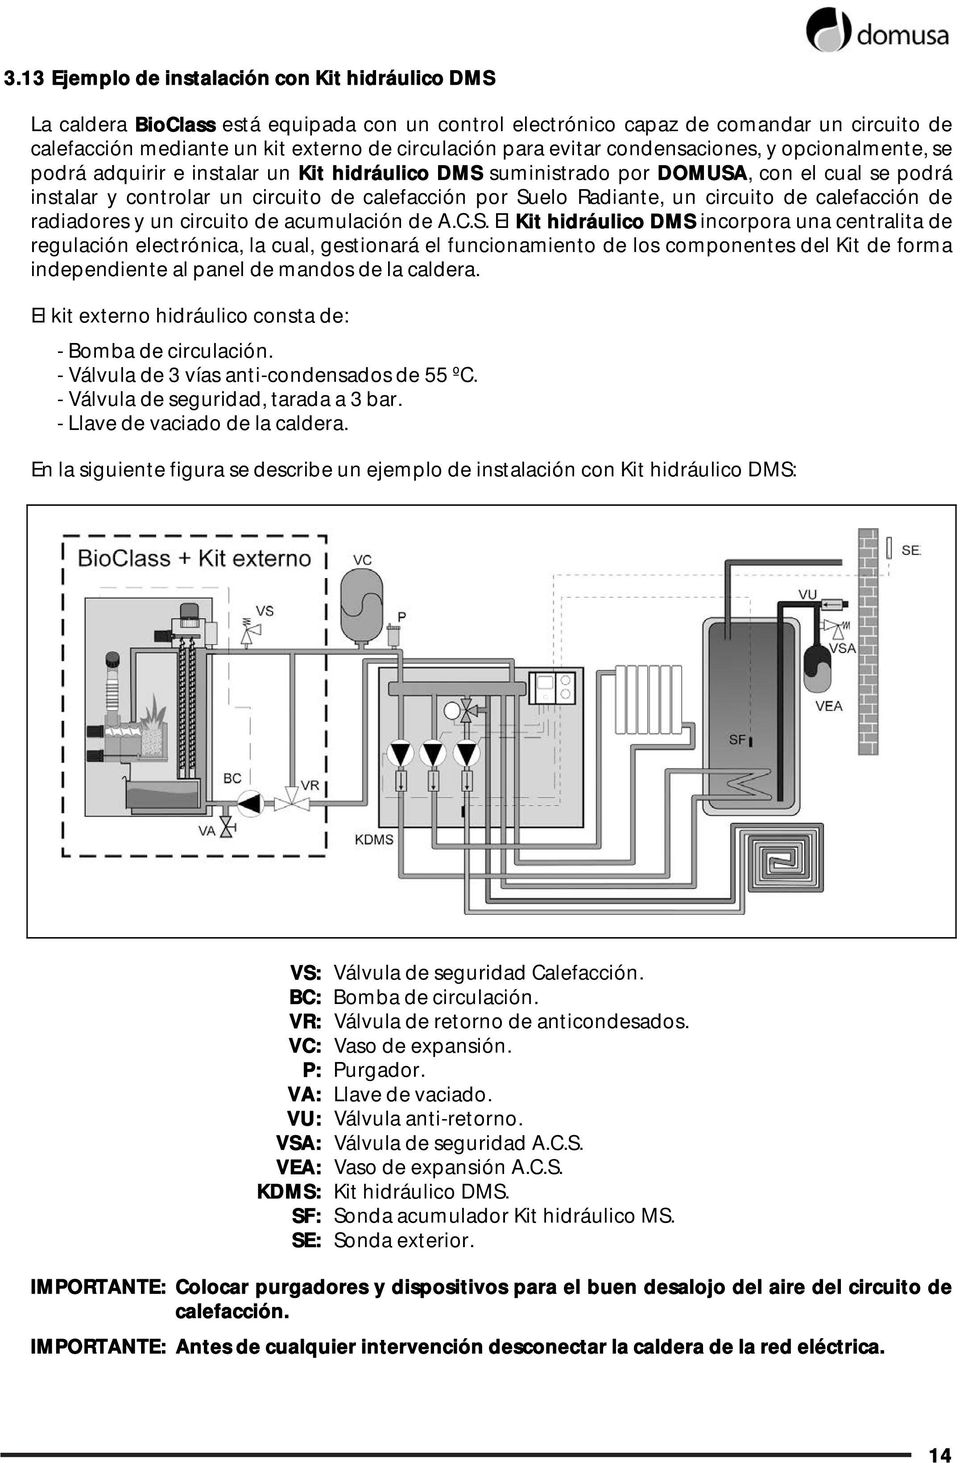 Radiante, un circuito de calefacción de radiadores y un circuito de acumulación de A.C.S.